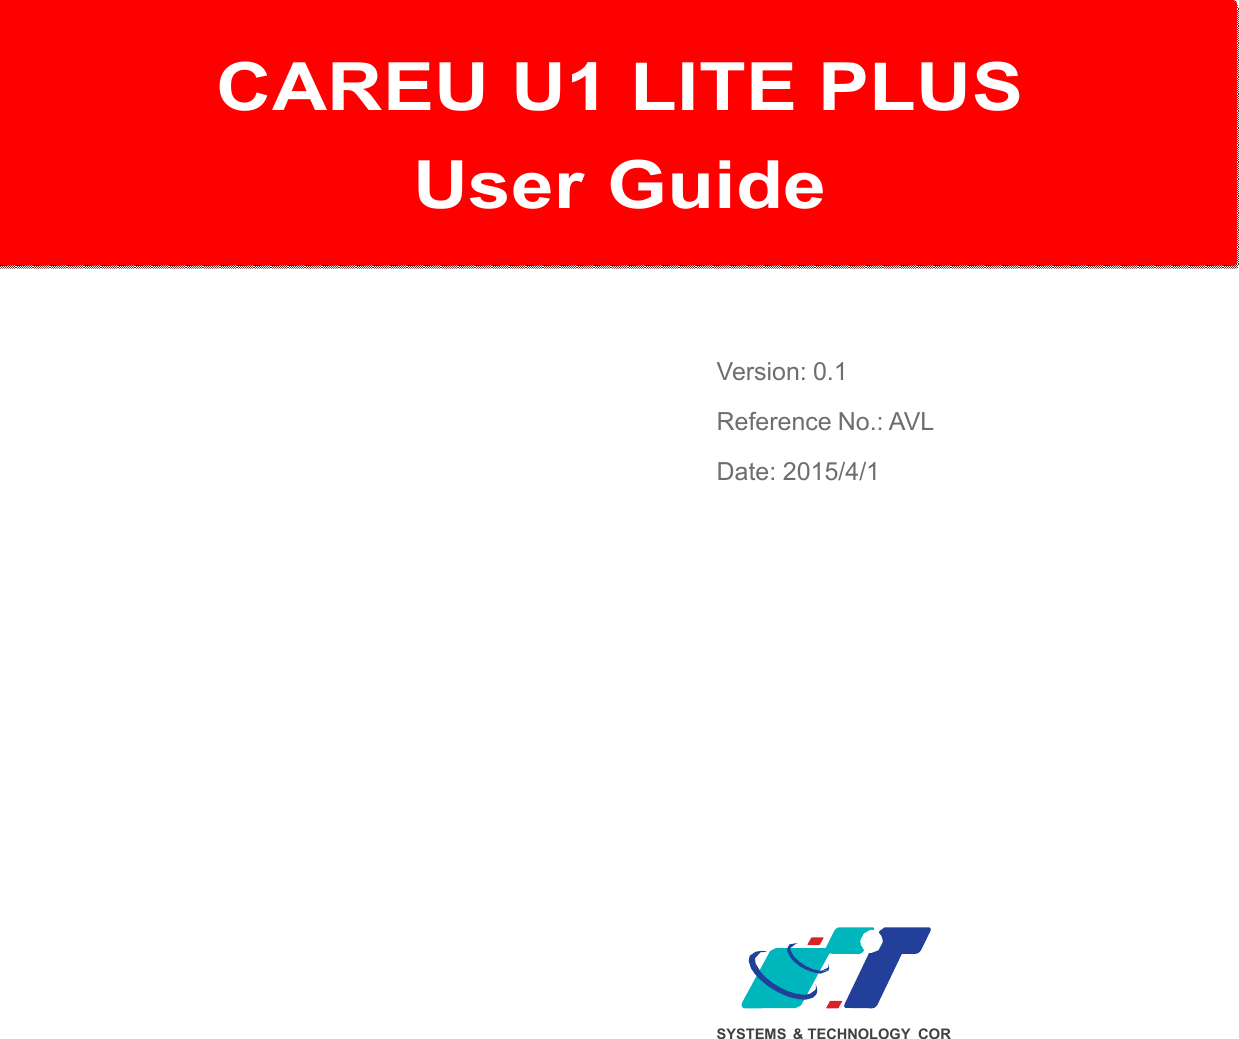   CAREU U1 PLUS  User Gu   CAREU U1 LITE PLUS User Guide    Version: 0.1 Reference No.: AVL Date: 2015/4/1               SYSTEMS  &amp; TECHNOLOGY COR